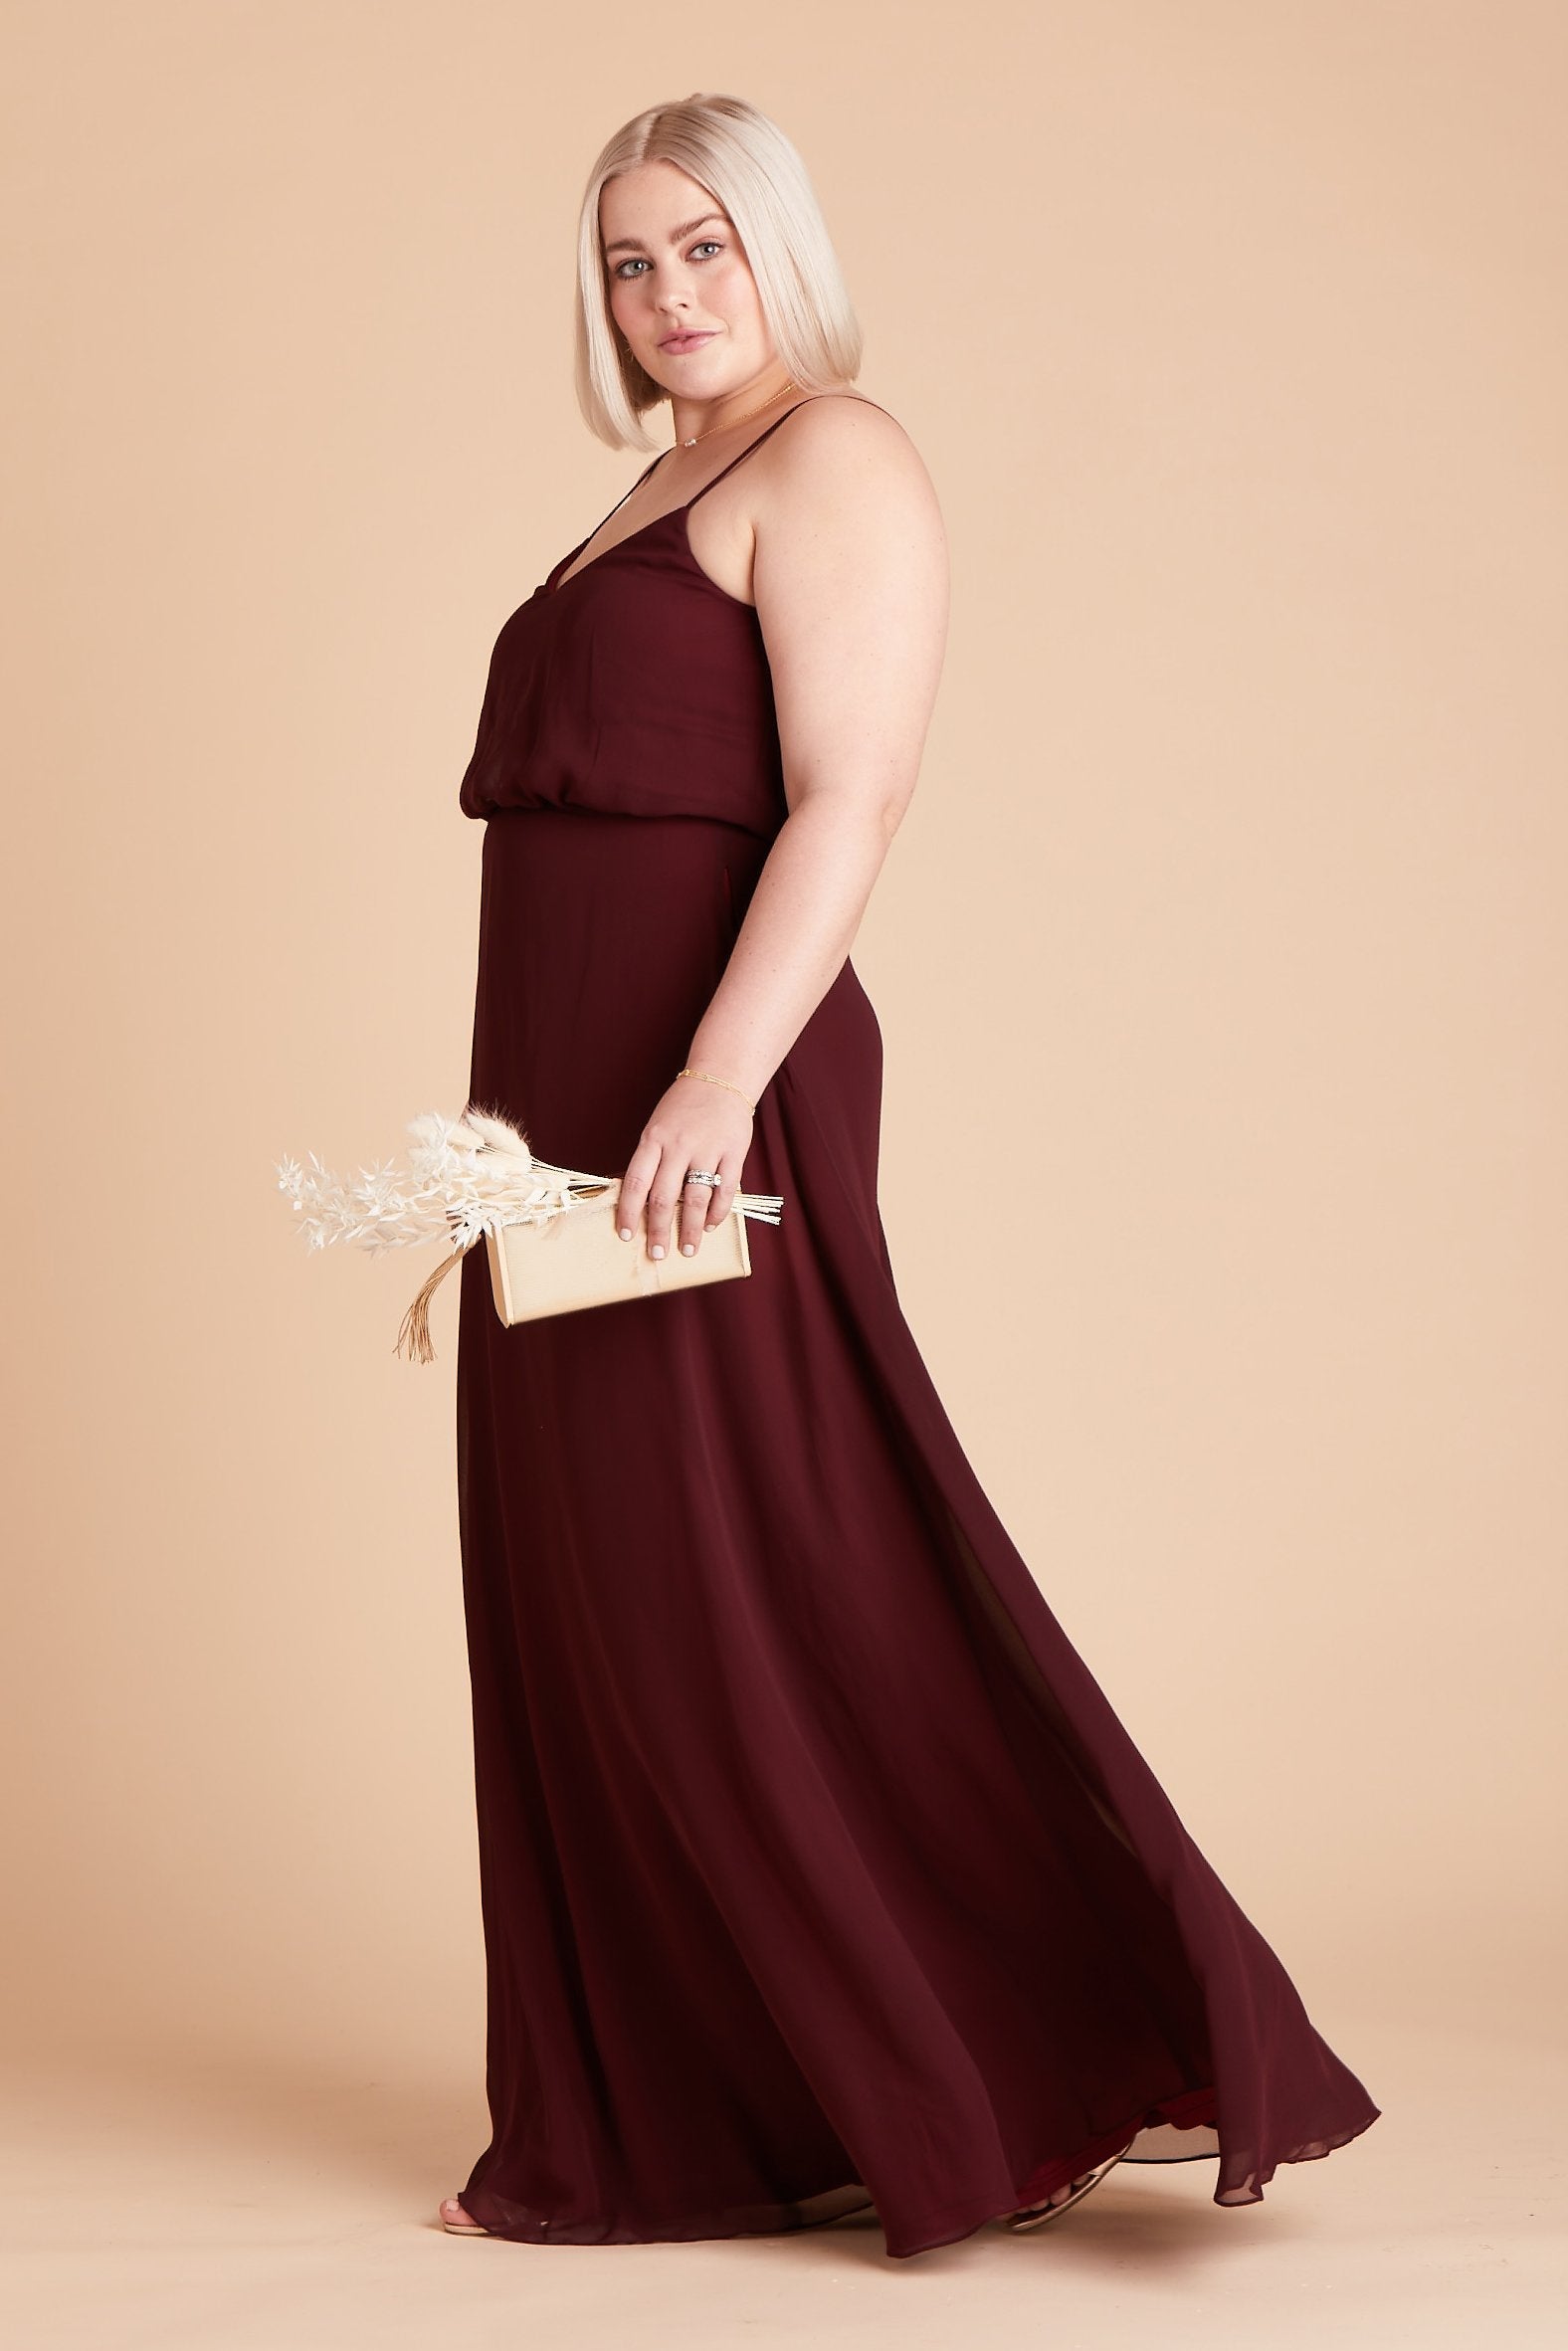 Gwennie plus size bridesmaid dress in cabernet burgundy chiffon by Birdy Grey, side view